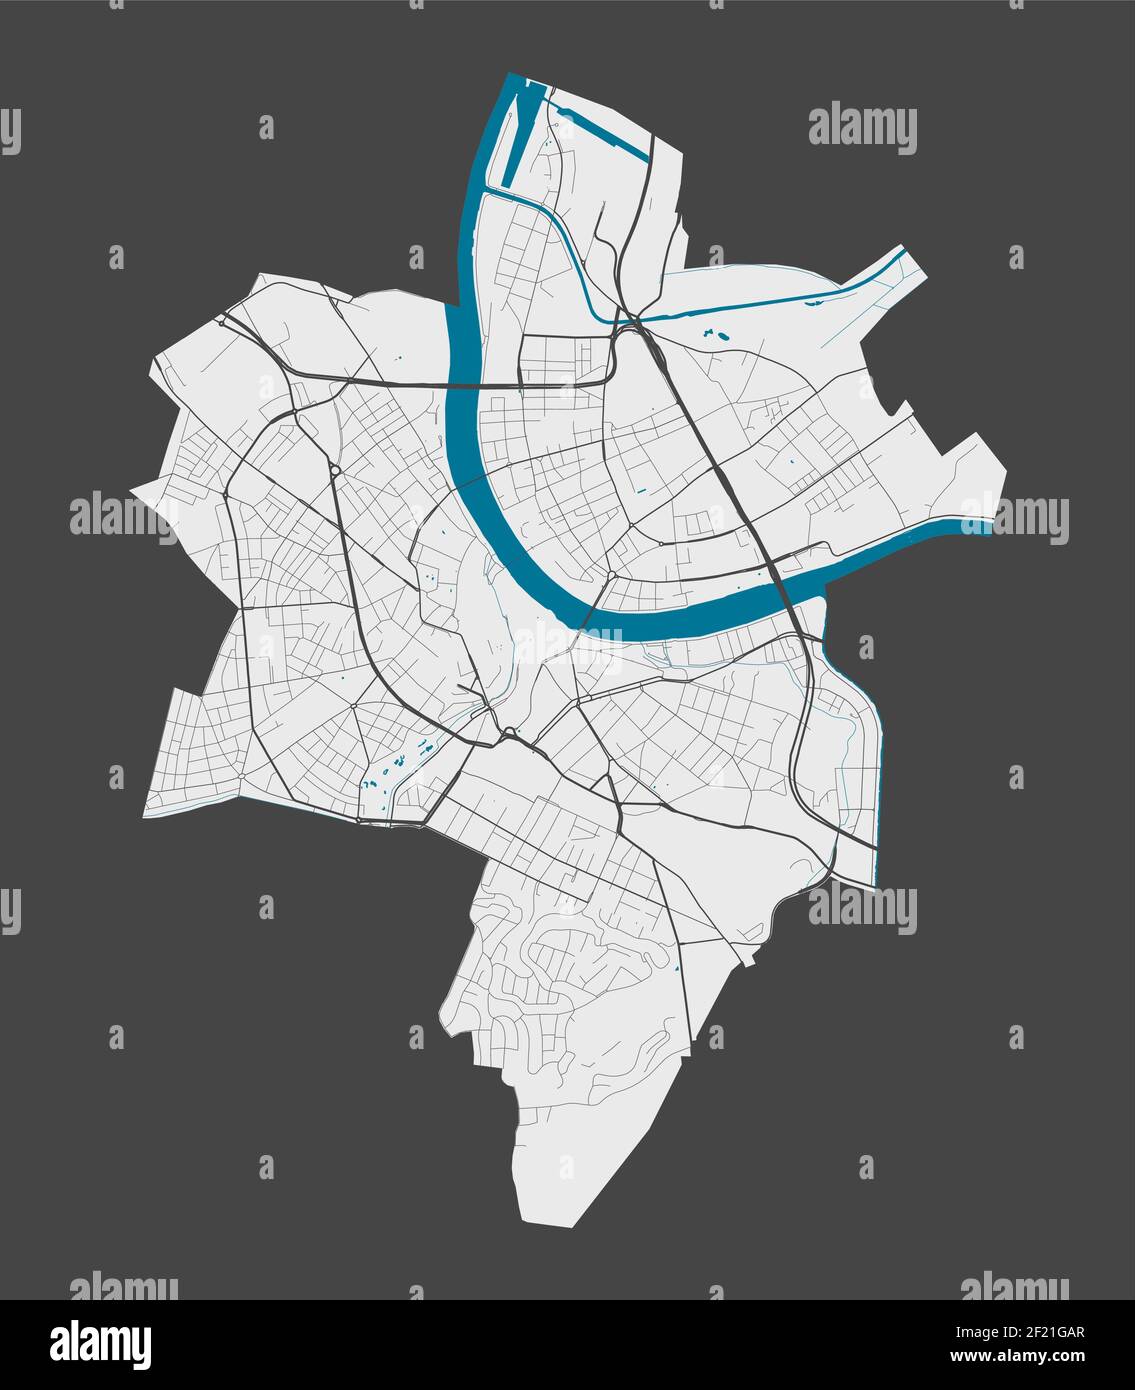 Mappa di Basilea. Mappa dettagliata dell'area amministrativa della città di Basilea. Panorama cittadino. Illustrazione vettoriale priva di royalty. Mappa con autostrade, strade, r Illustrazione Vettoriale